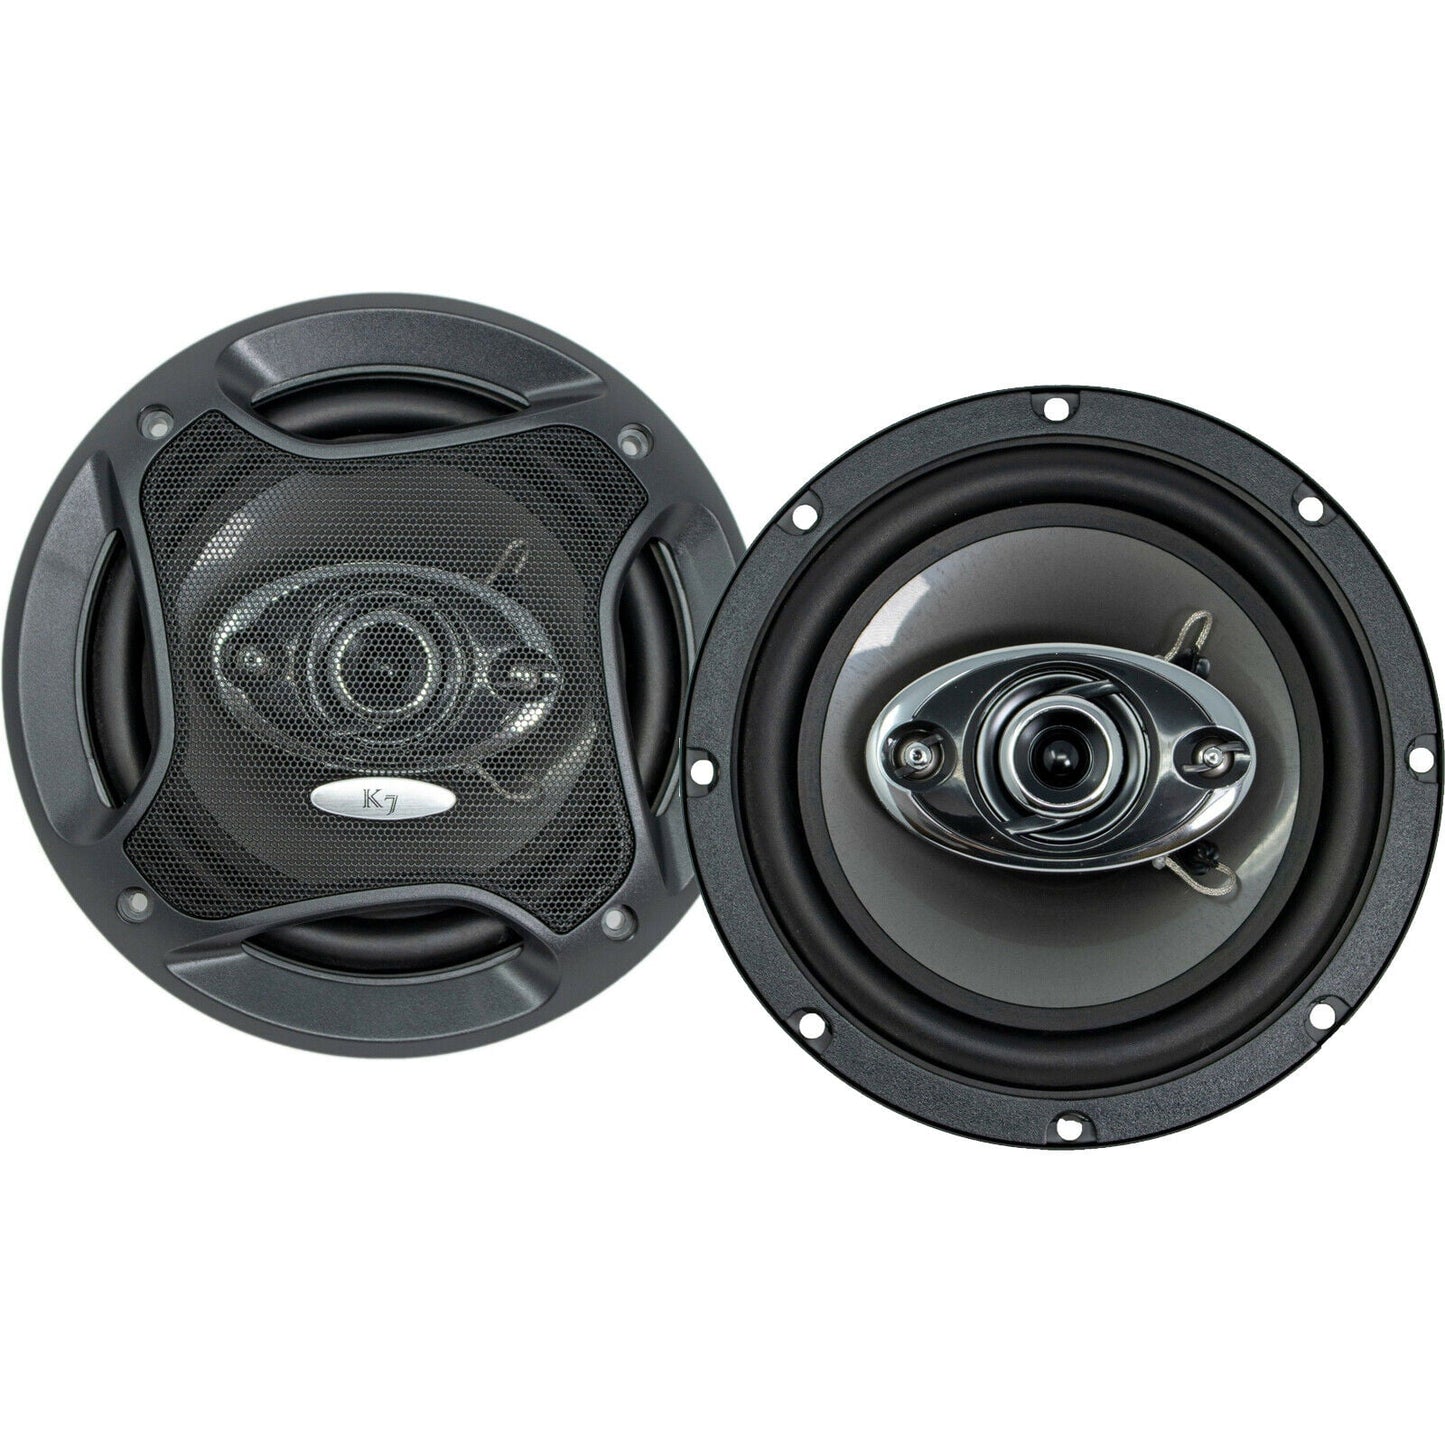 4x Audiotek Elite 800 Watts 6.5" 4Way Car Audio Stereo Coaxial Speakers Bundle